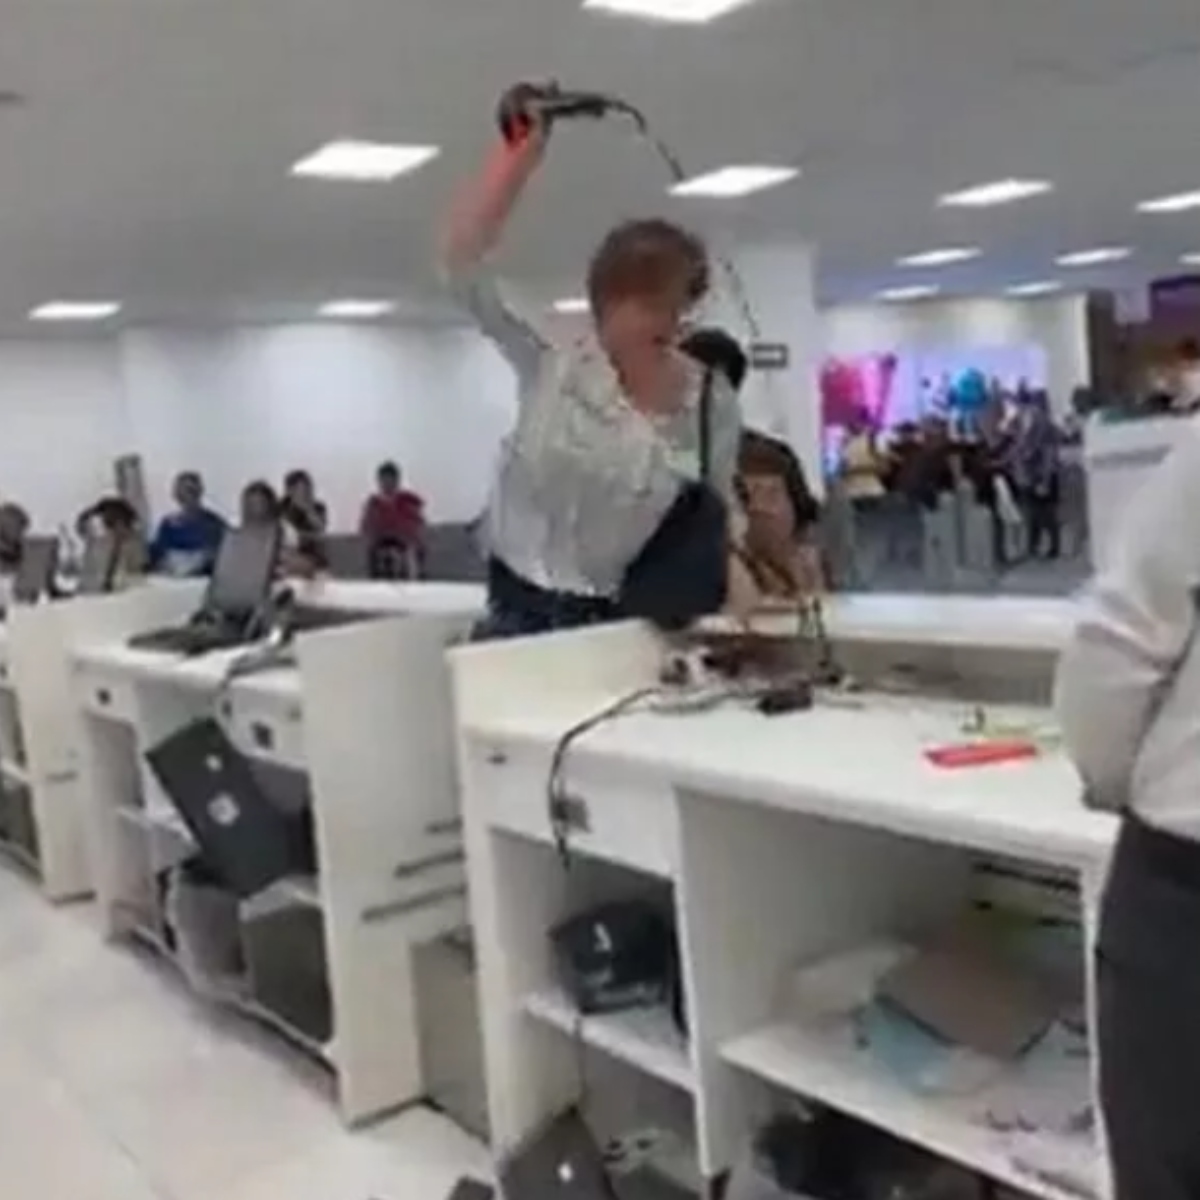  Passageira se revolta e quebra computadores de aeroporto 